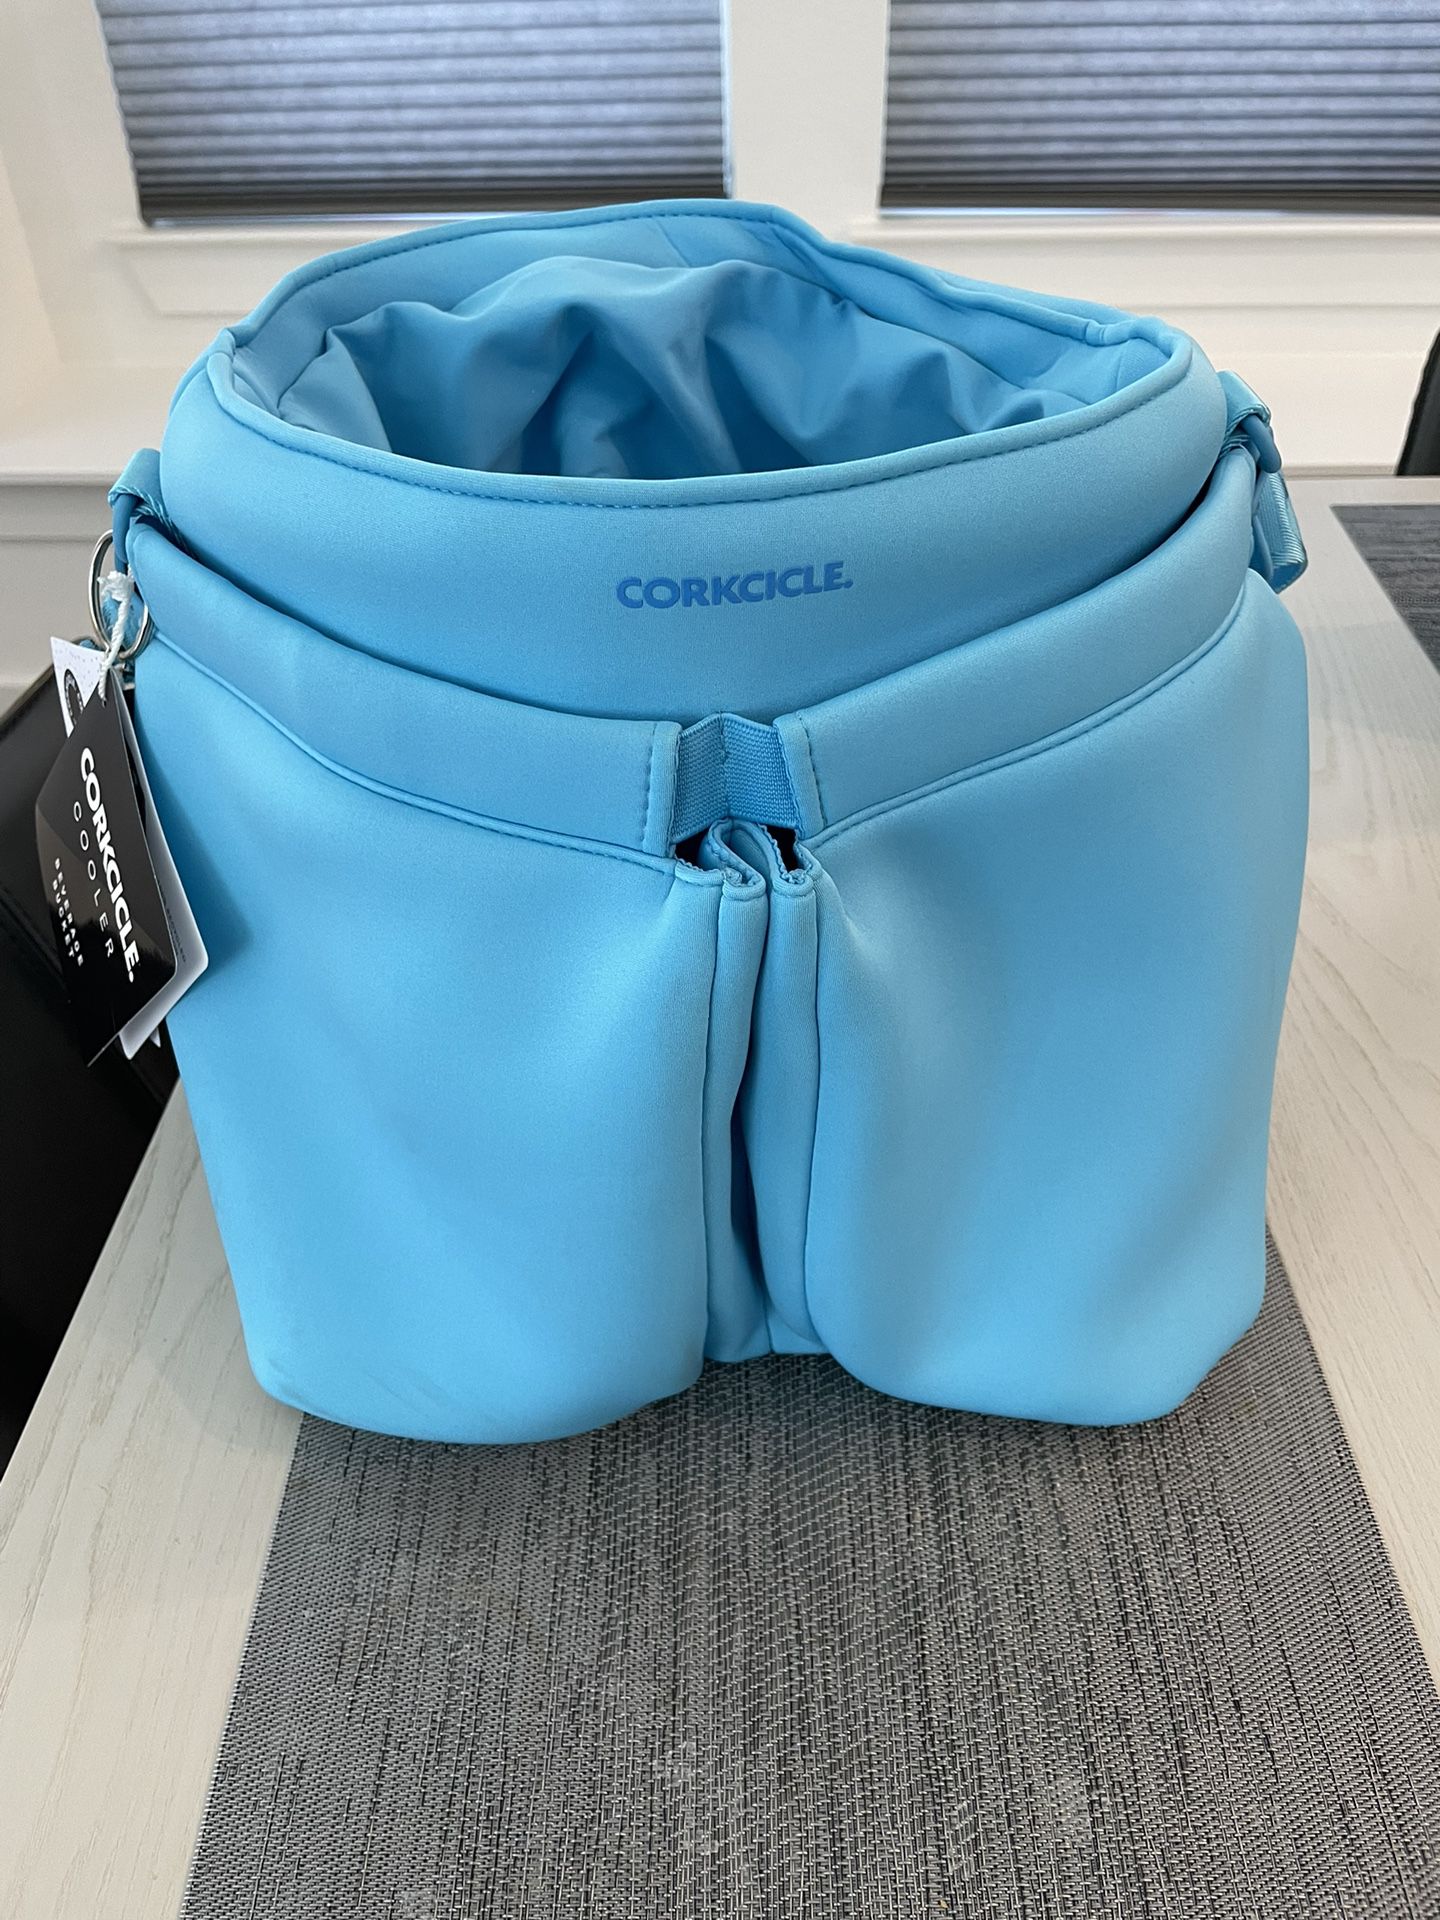 Corkcicle - Beverage Bucket Bag Cooler